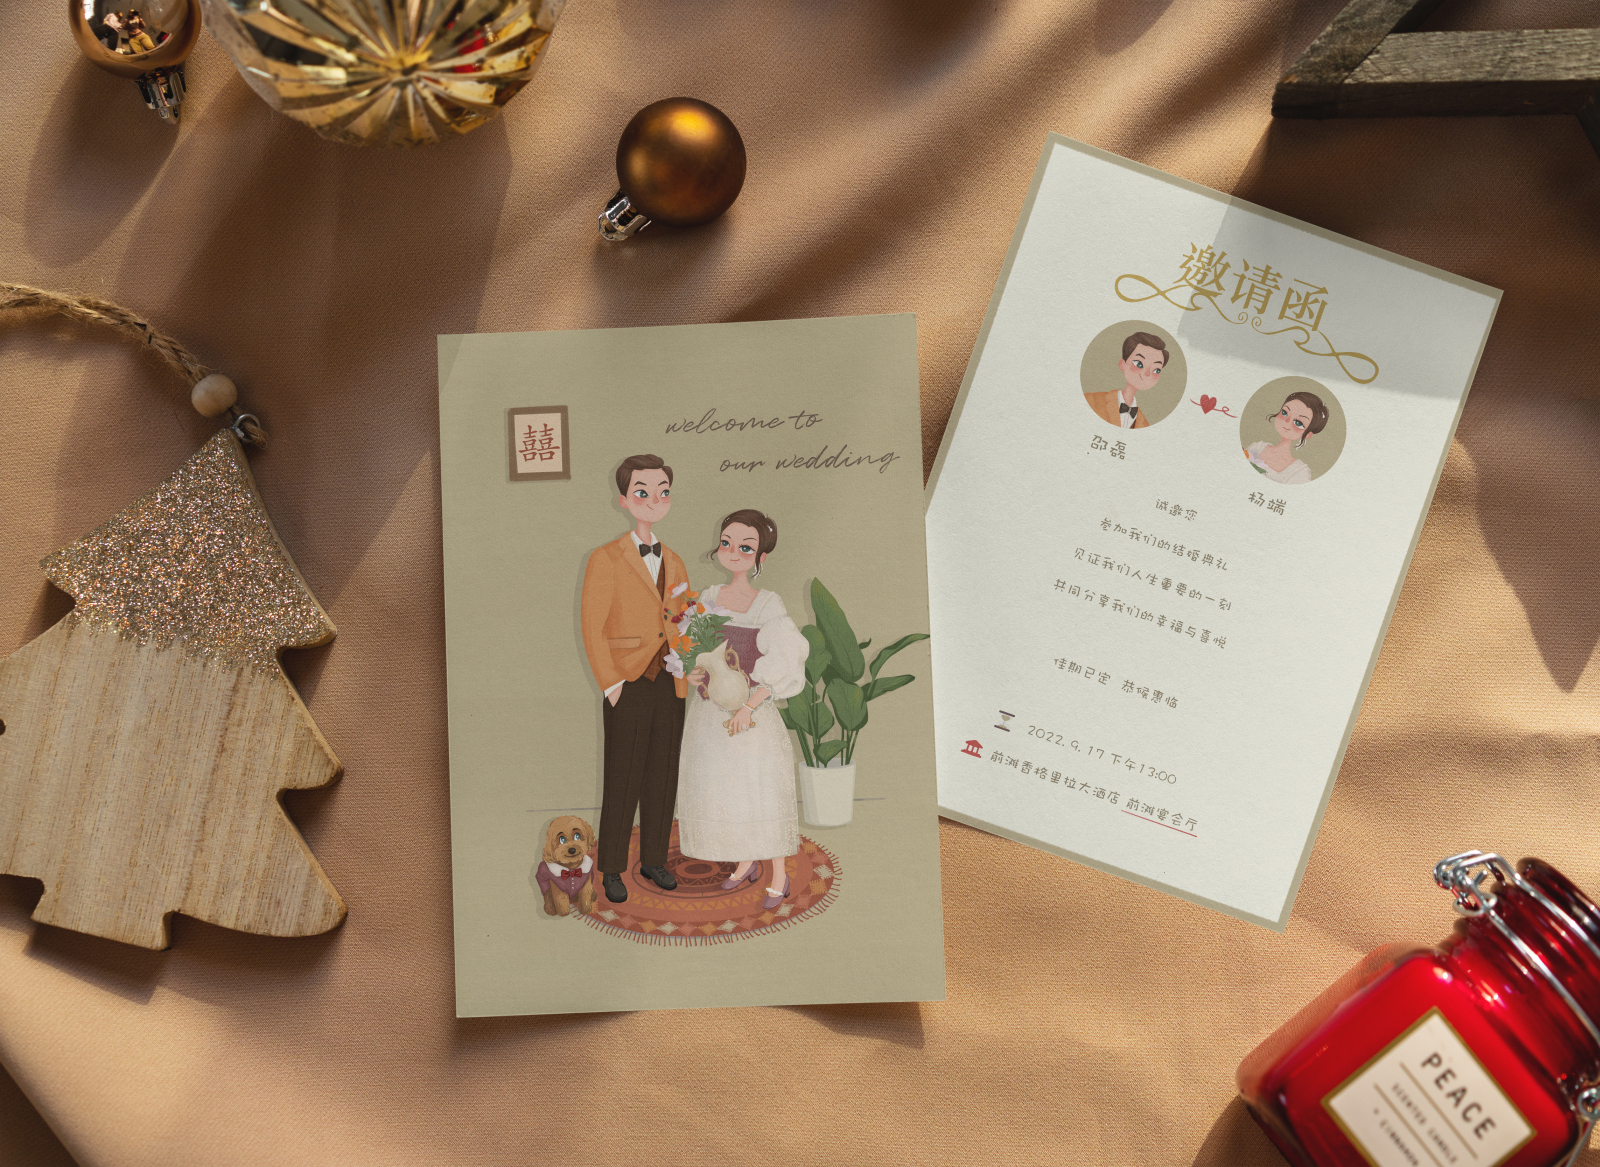 Wedding Invitation Card by Lunawan on Dribbble